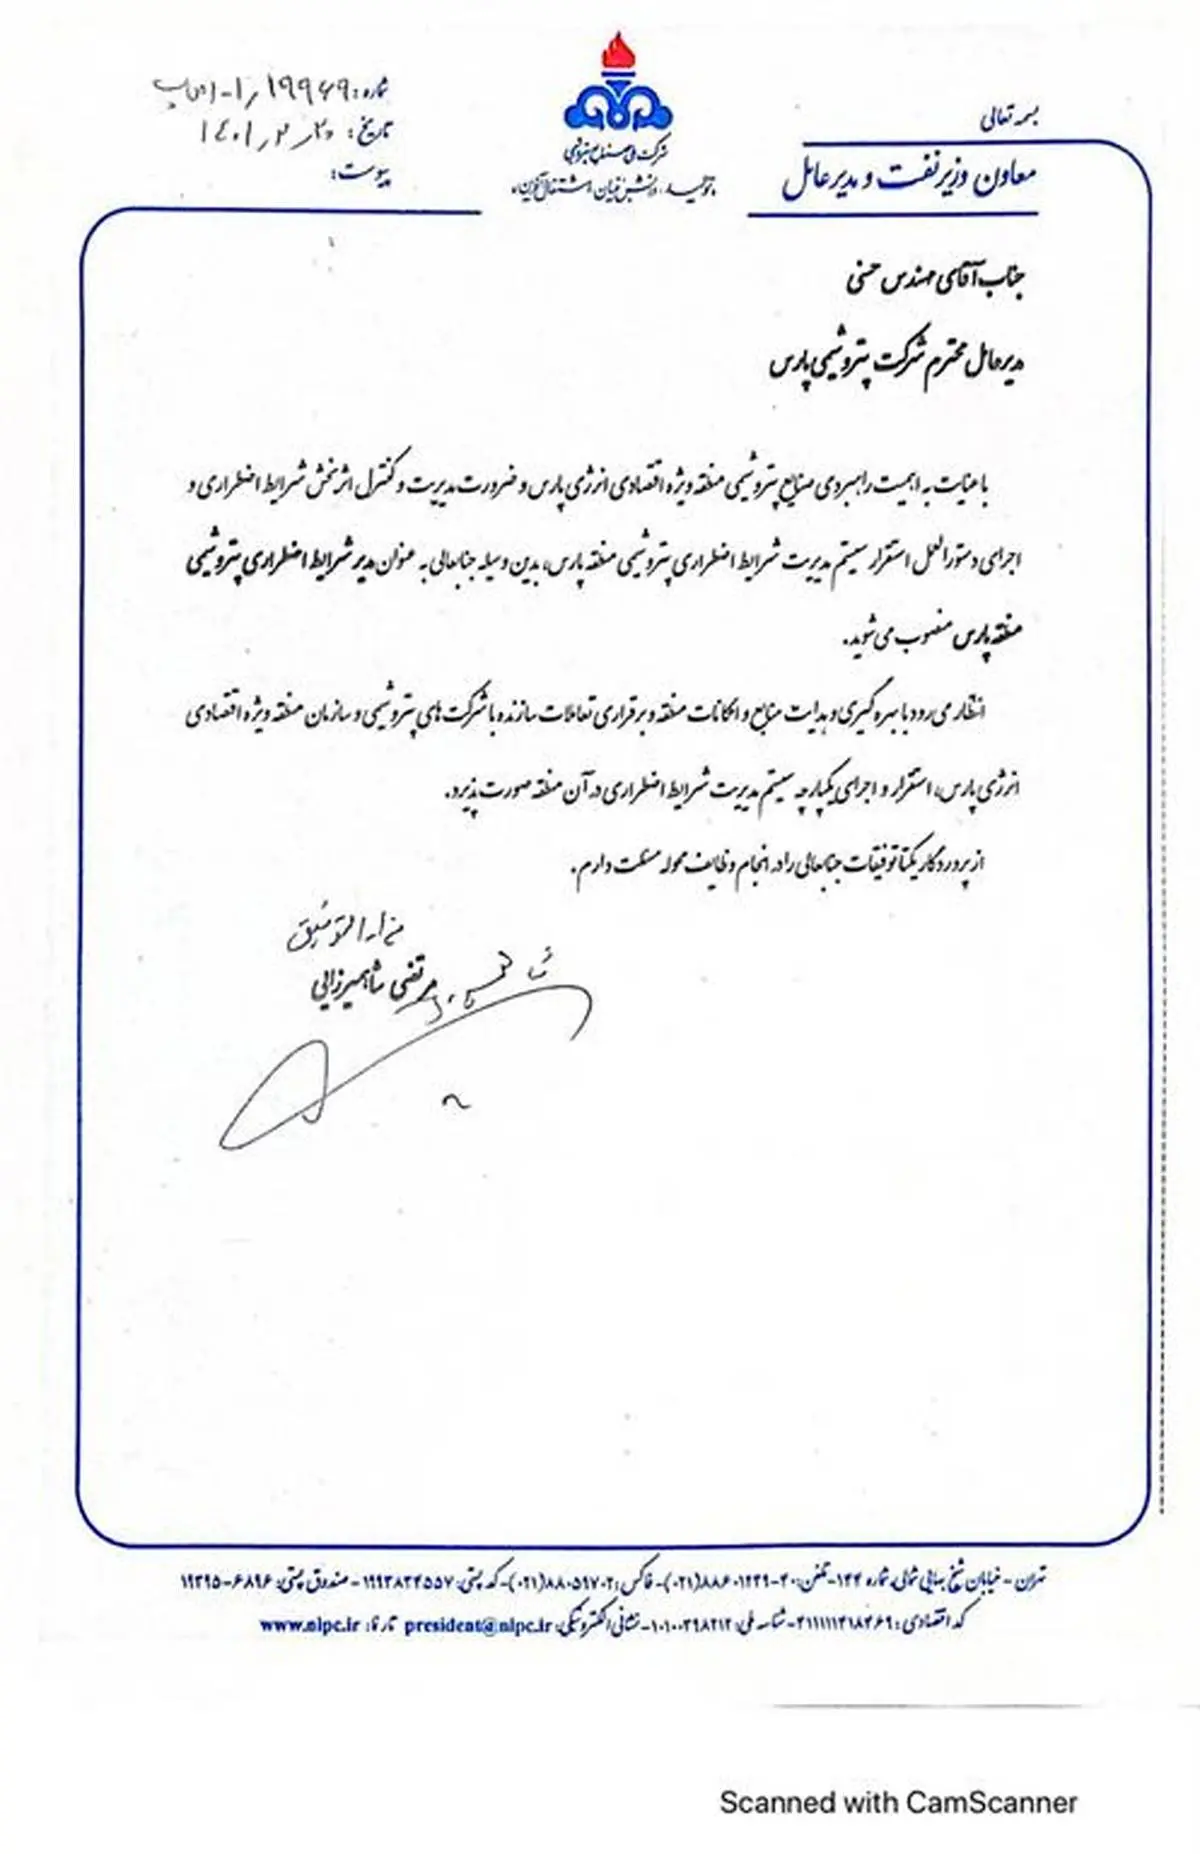 حکم انتصاب مهندس حسنی بعنوان مدیر شرایط اضطراری پتروشیمی های منطقه پارس